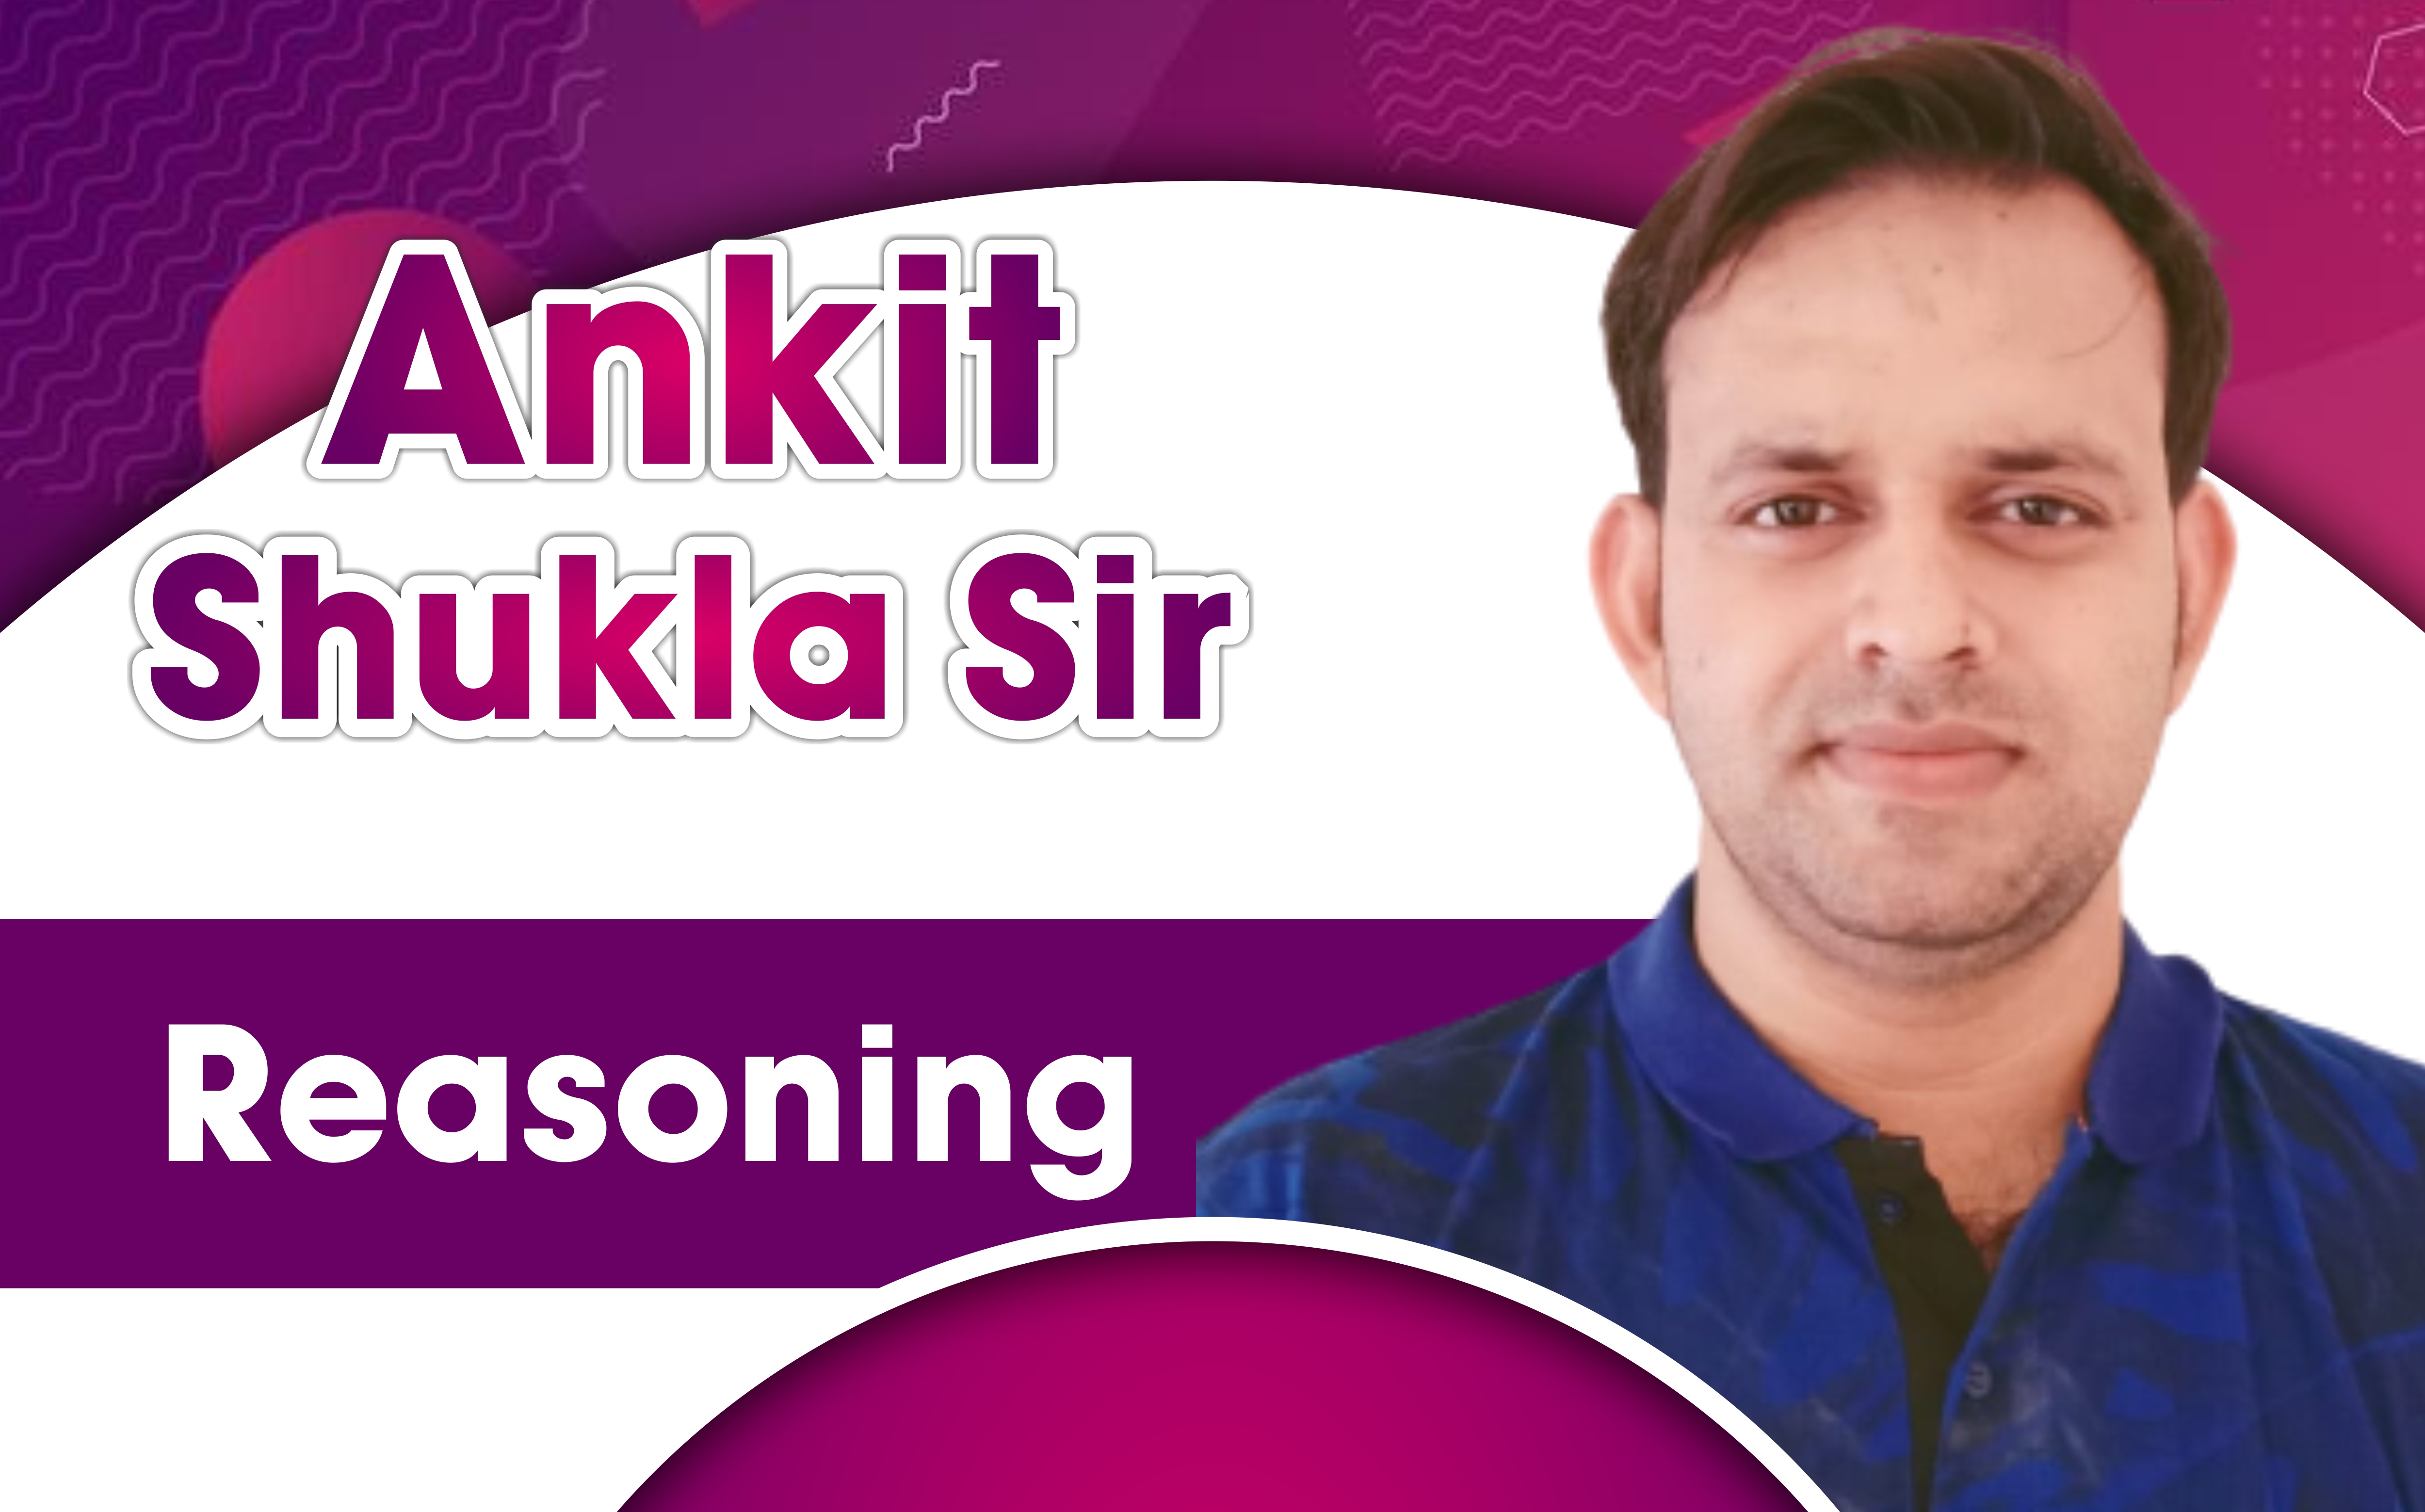 Prof. Ankit Shukla